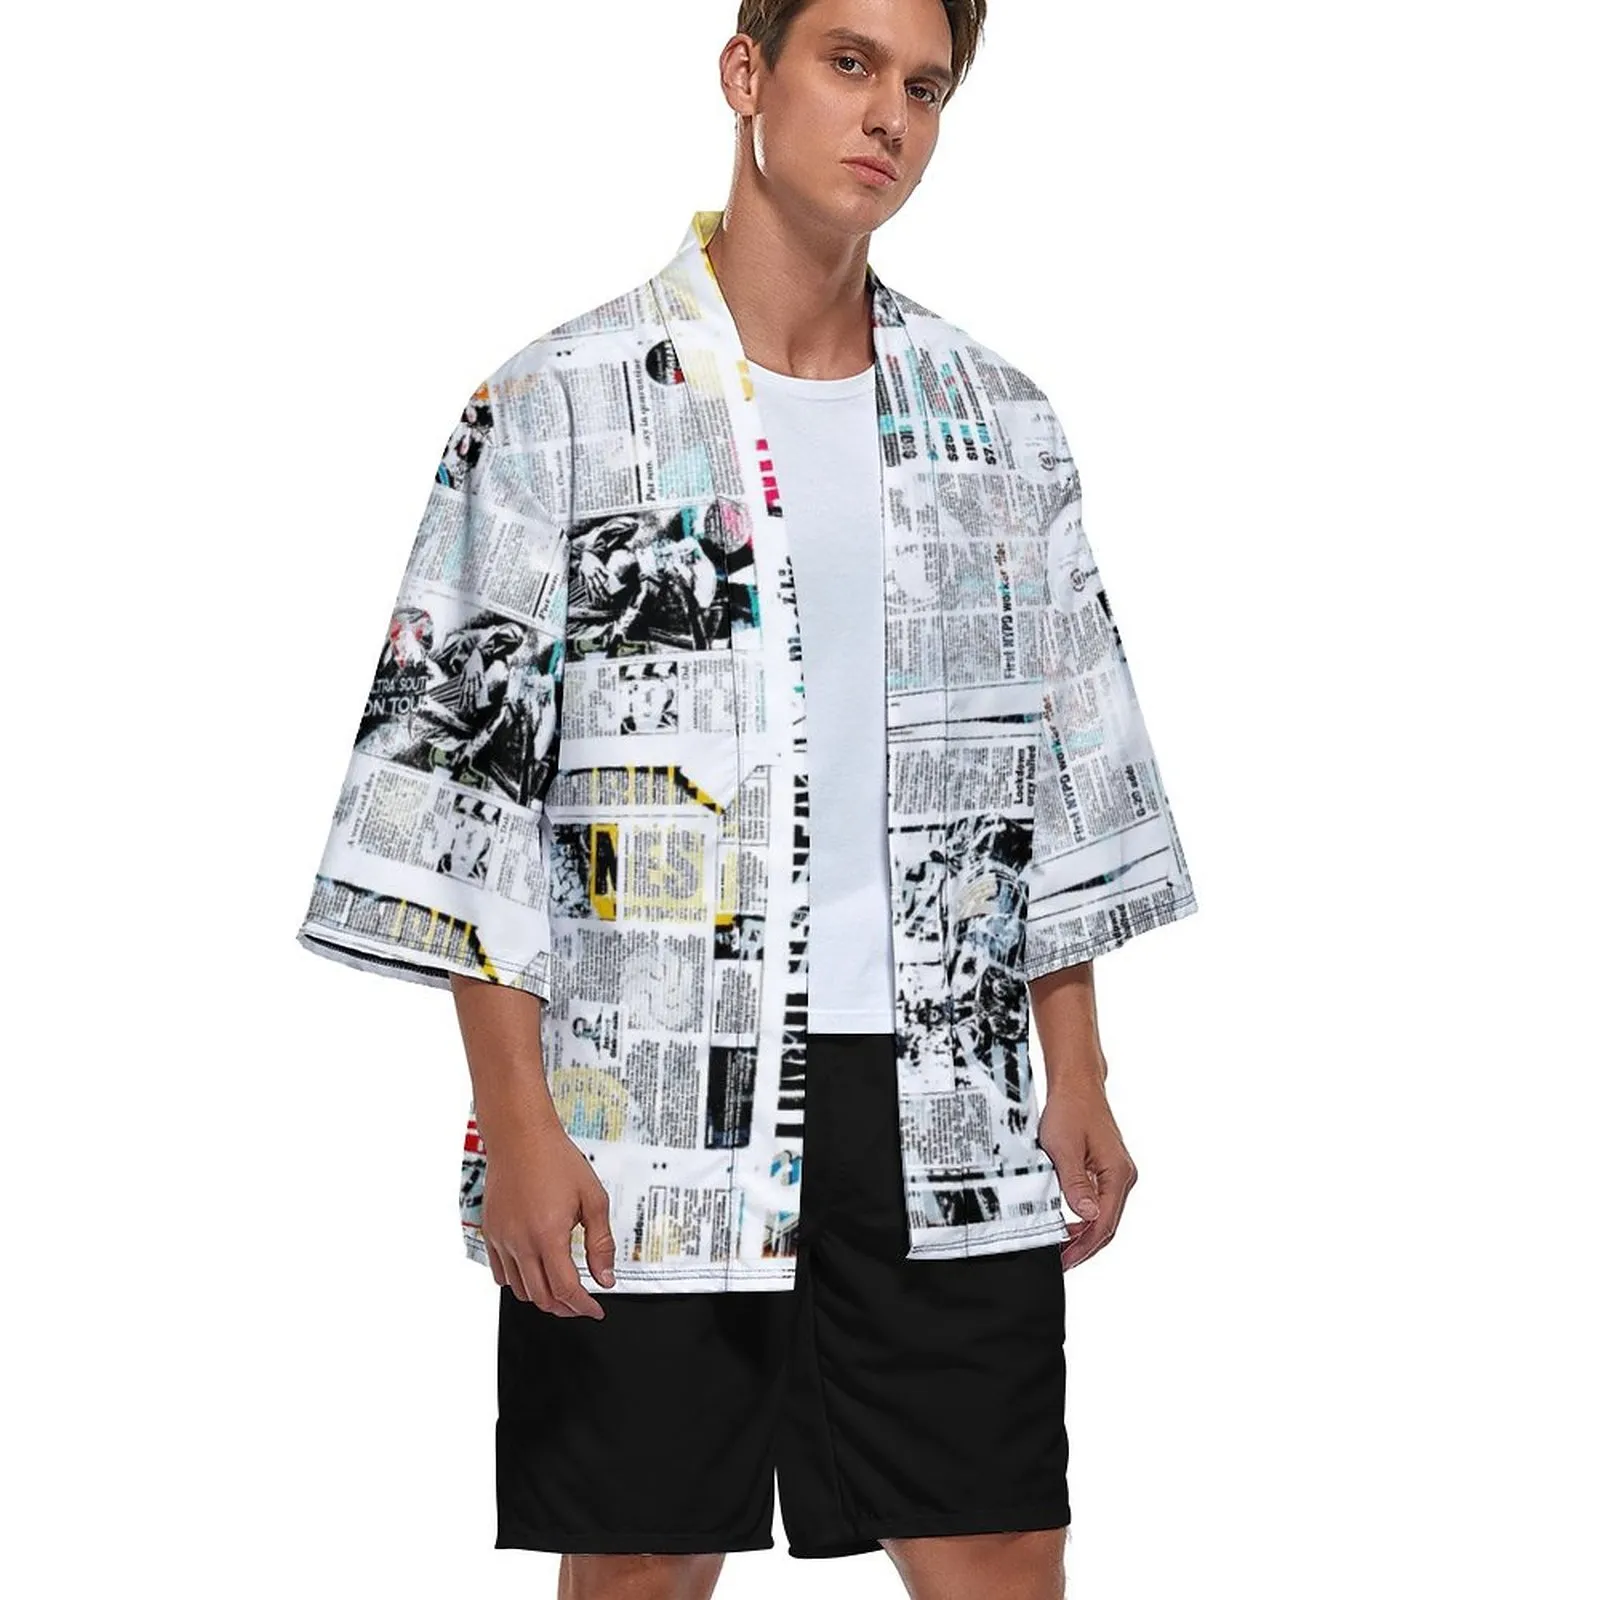 Özel Erkekler Kimono Cardigan Ceket Serin ve rahat moda yedi noktalı kol ön hırka ceket düğmesiz gevşek% 95 polyester +% 5 spandeks 221g renk kontrast